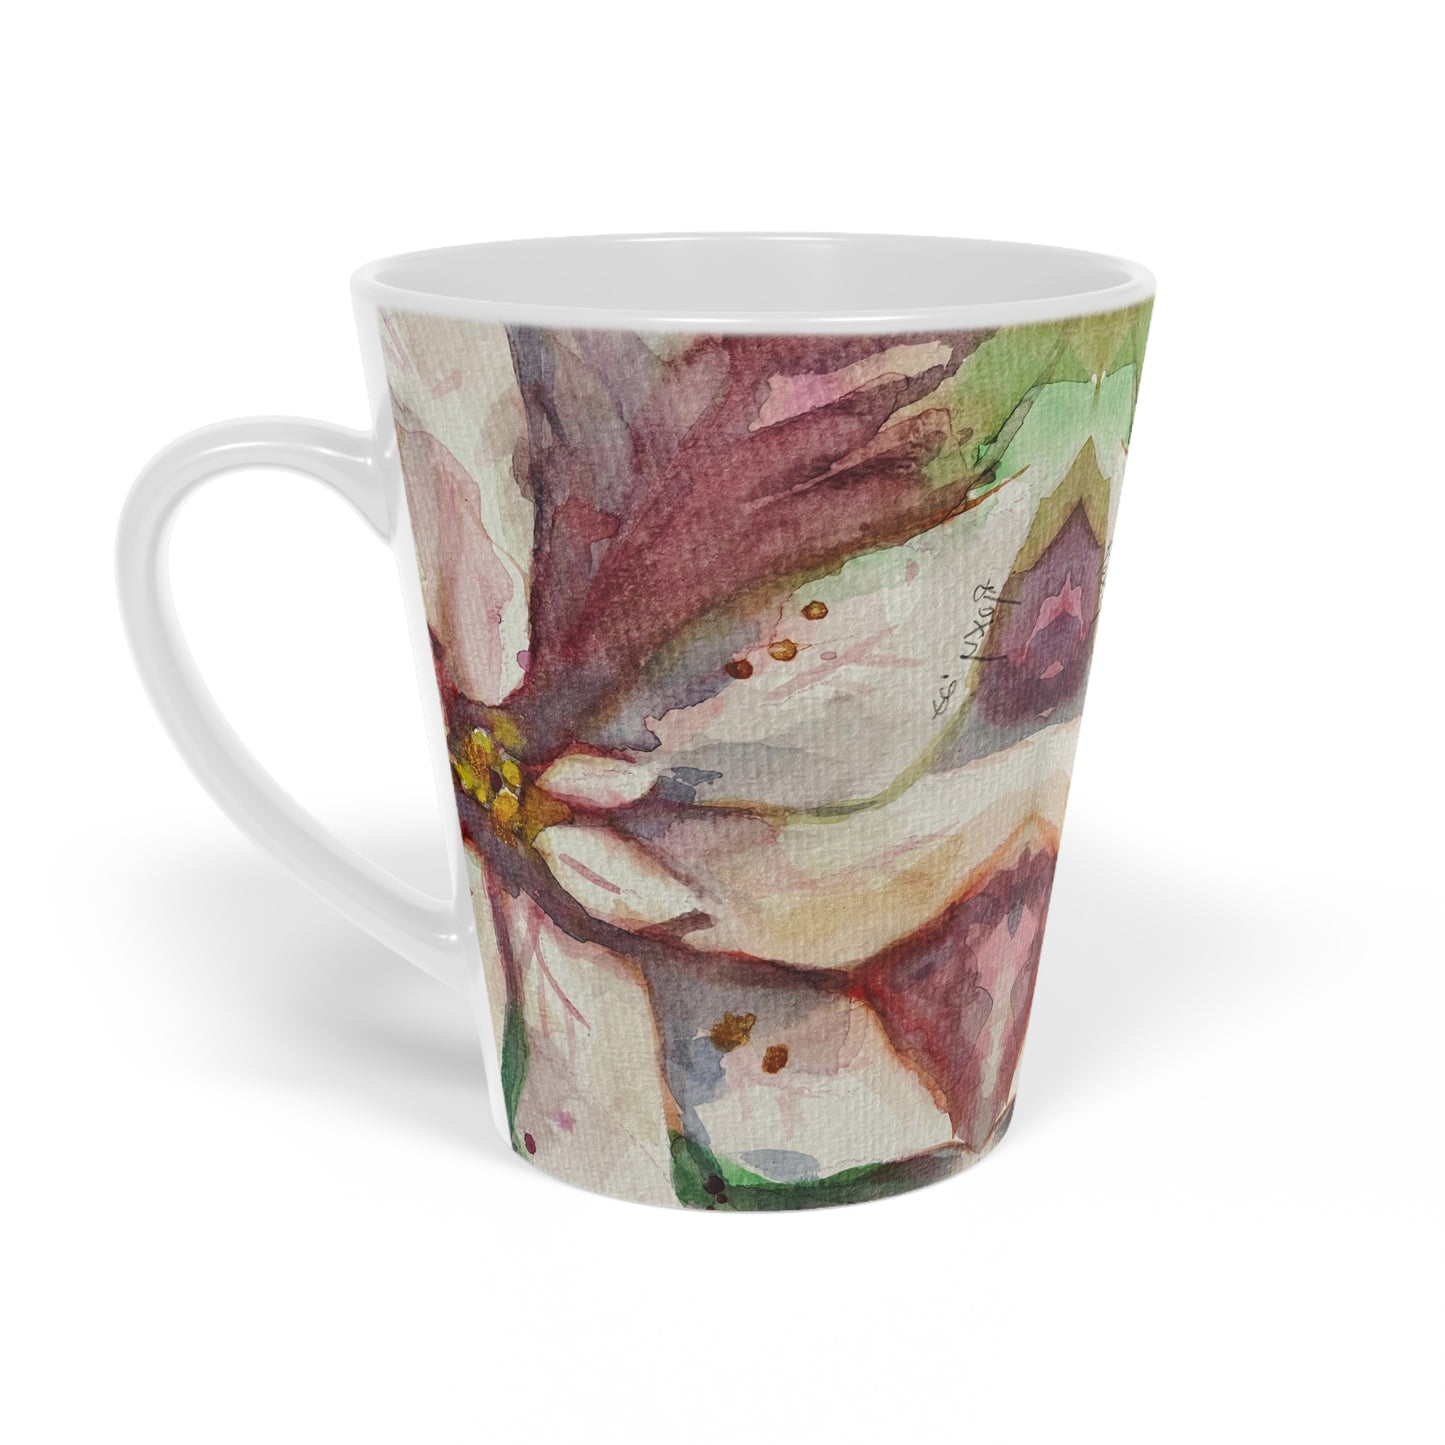 White Poinsettias Latte Mug, 12oz